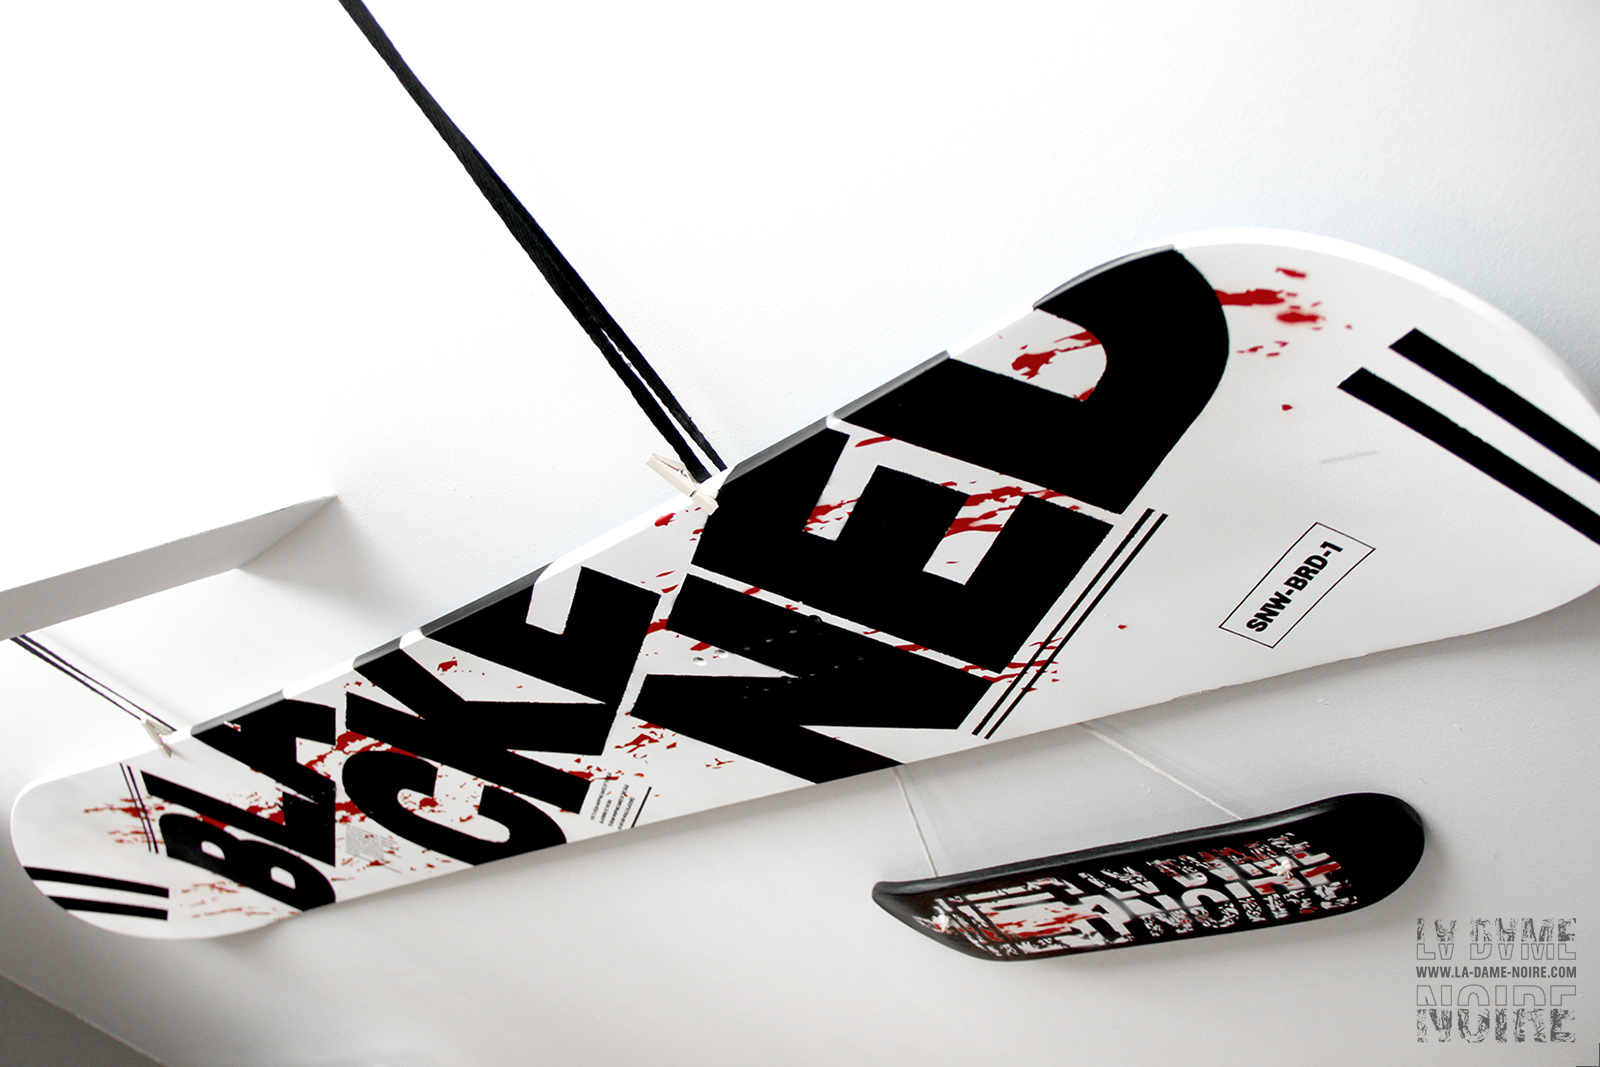 Détail du snowboard peint en noir et blanc avec le mot blackened